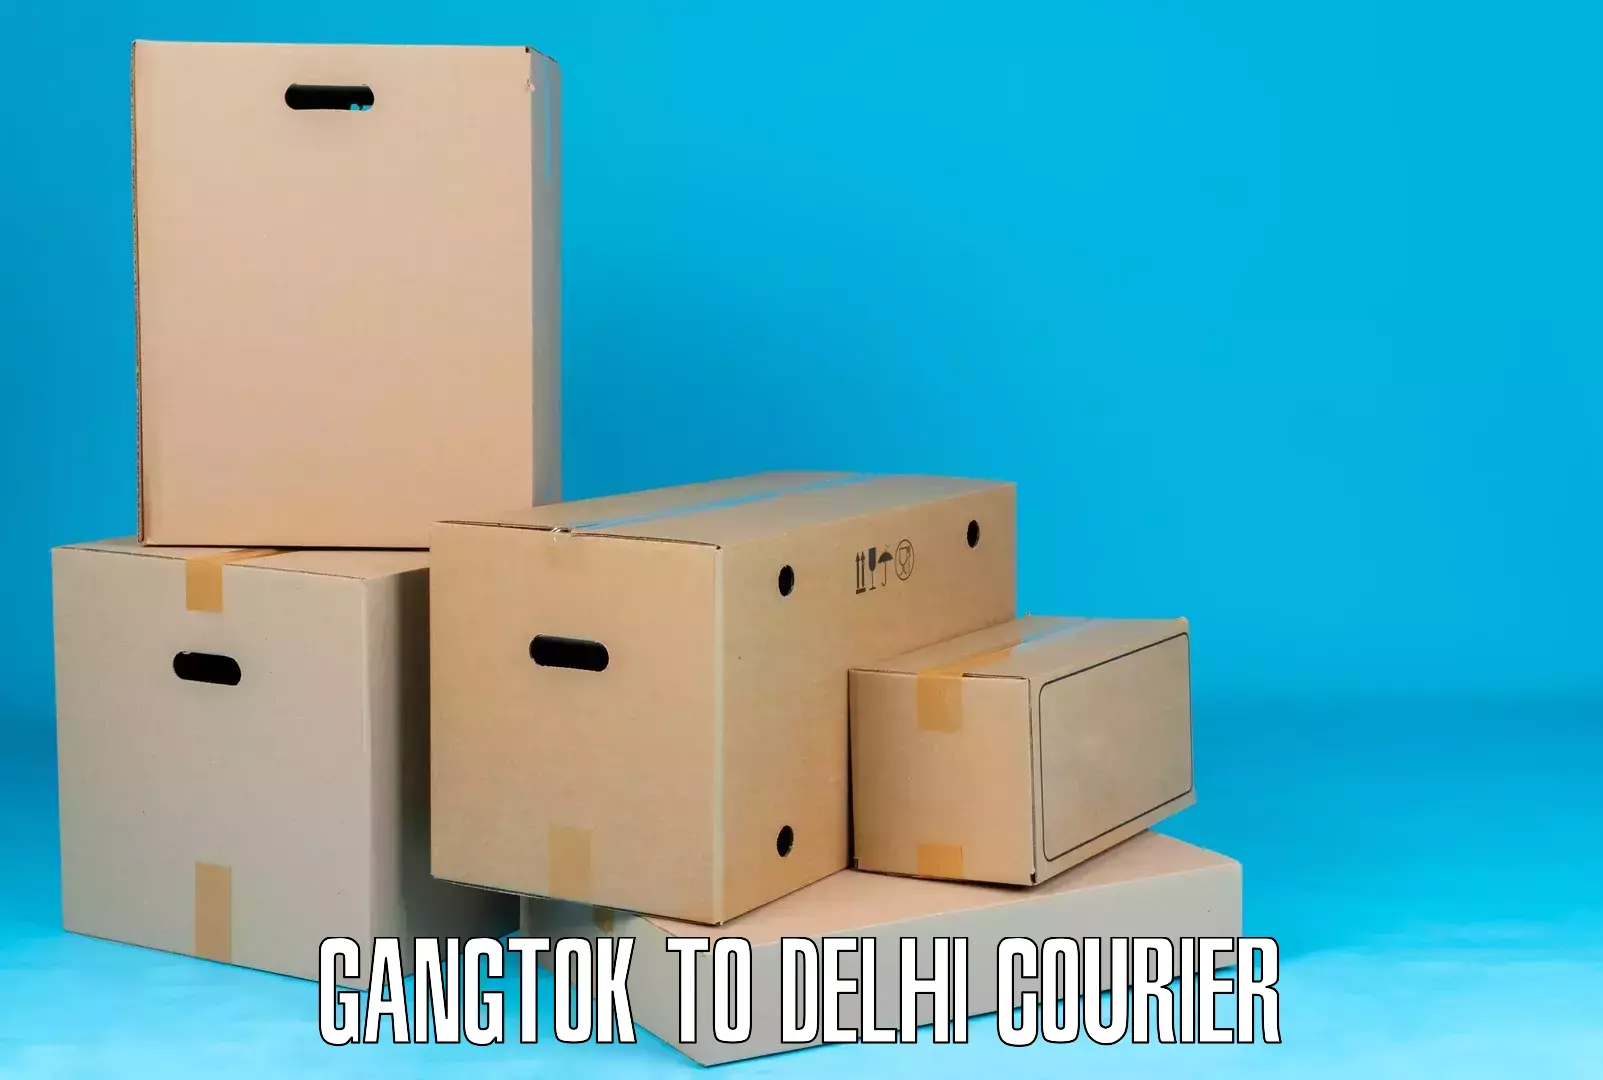 Reliable courier services Gangtok to Kalkaji